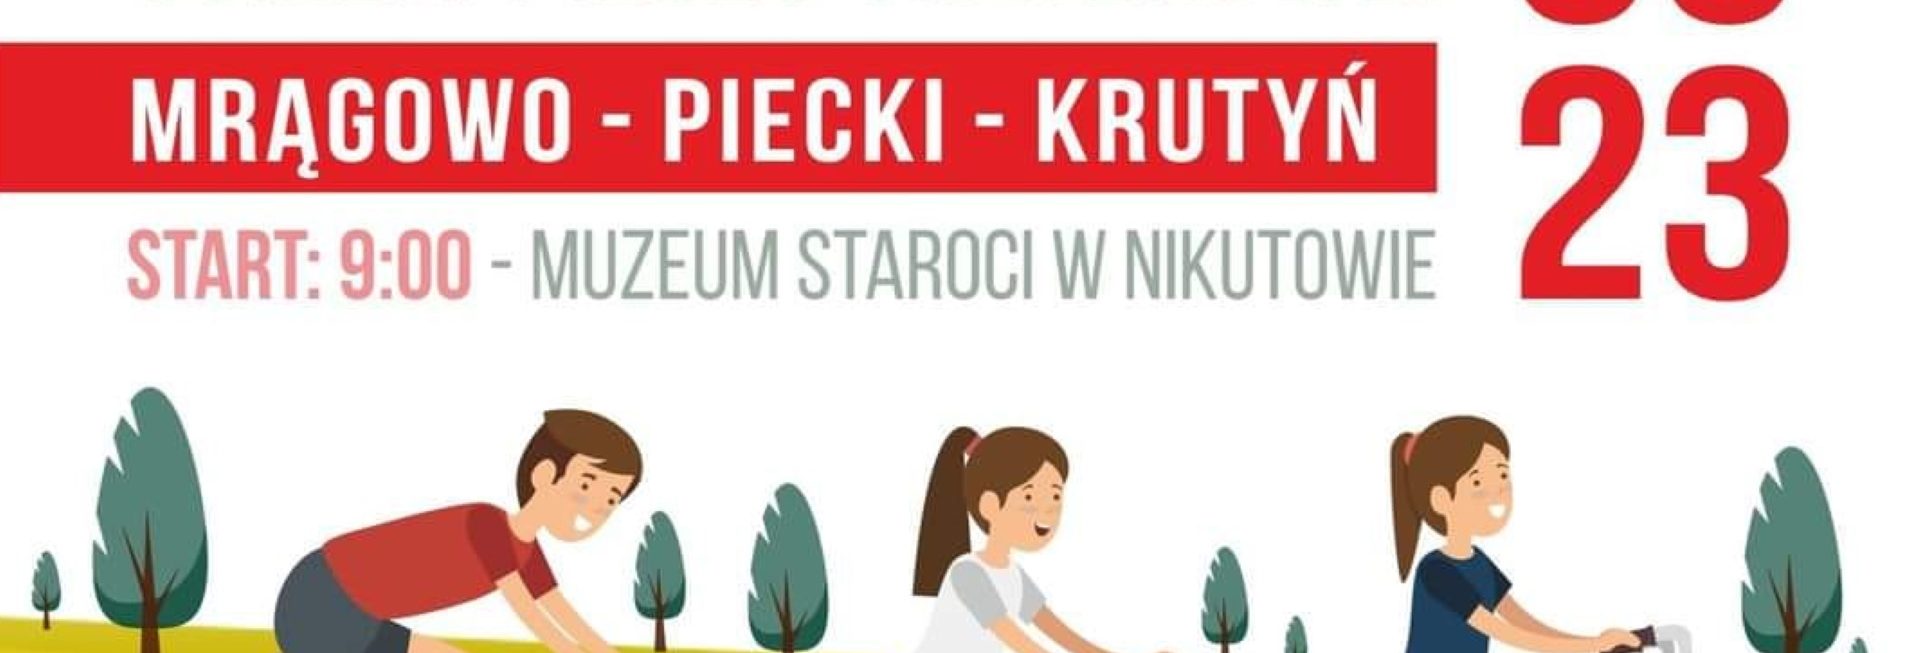 Plakat zapraszający w sobotę 3 czerwca 2023 r. do Mrągowa na otwarcie ścieżki pieszo-rowerowej Mrągowo-Piecki-Krutyń 2023. 